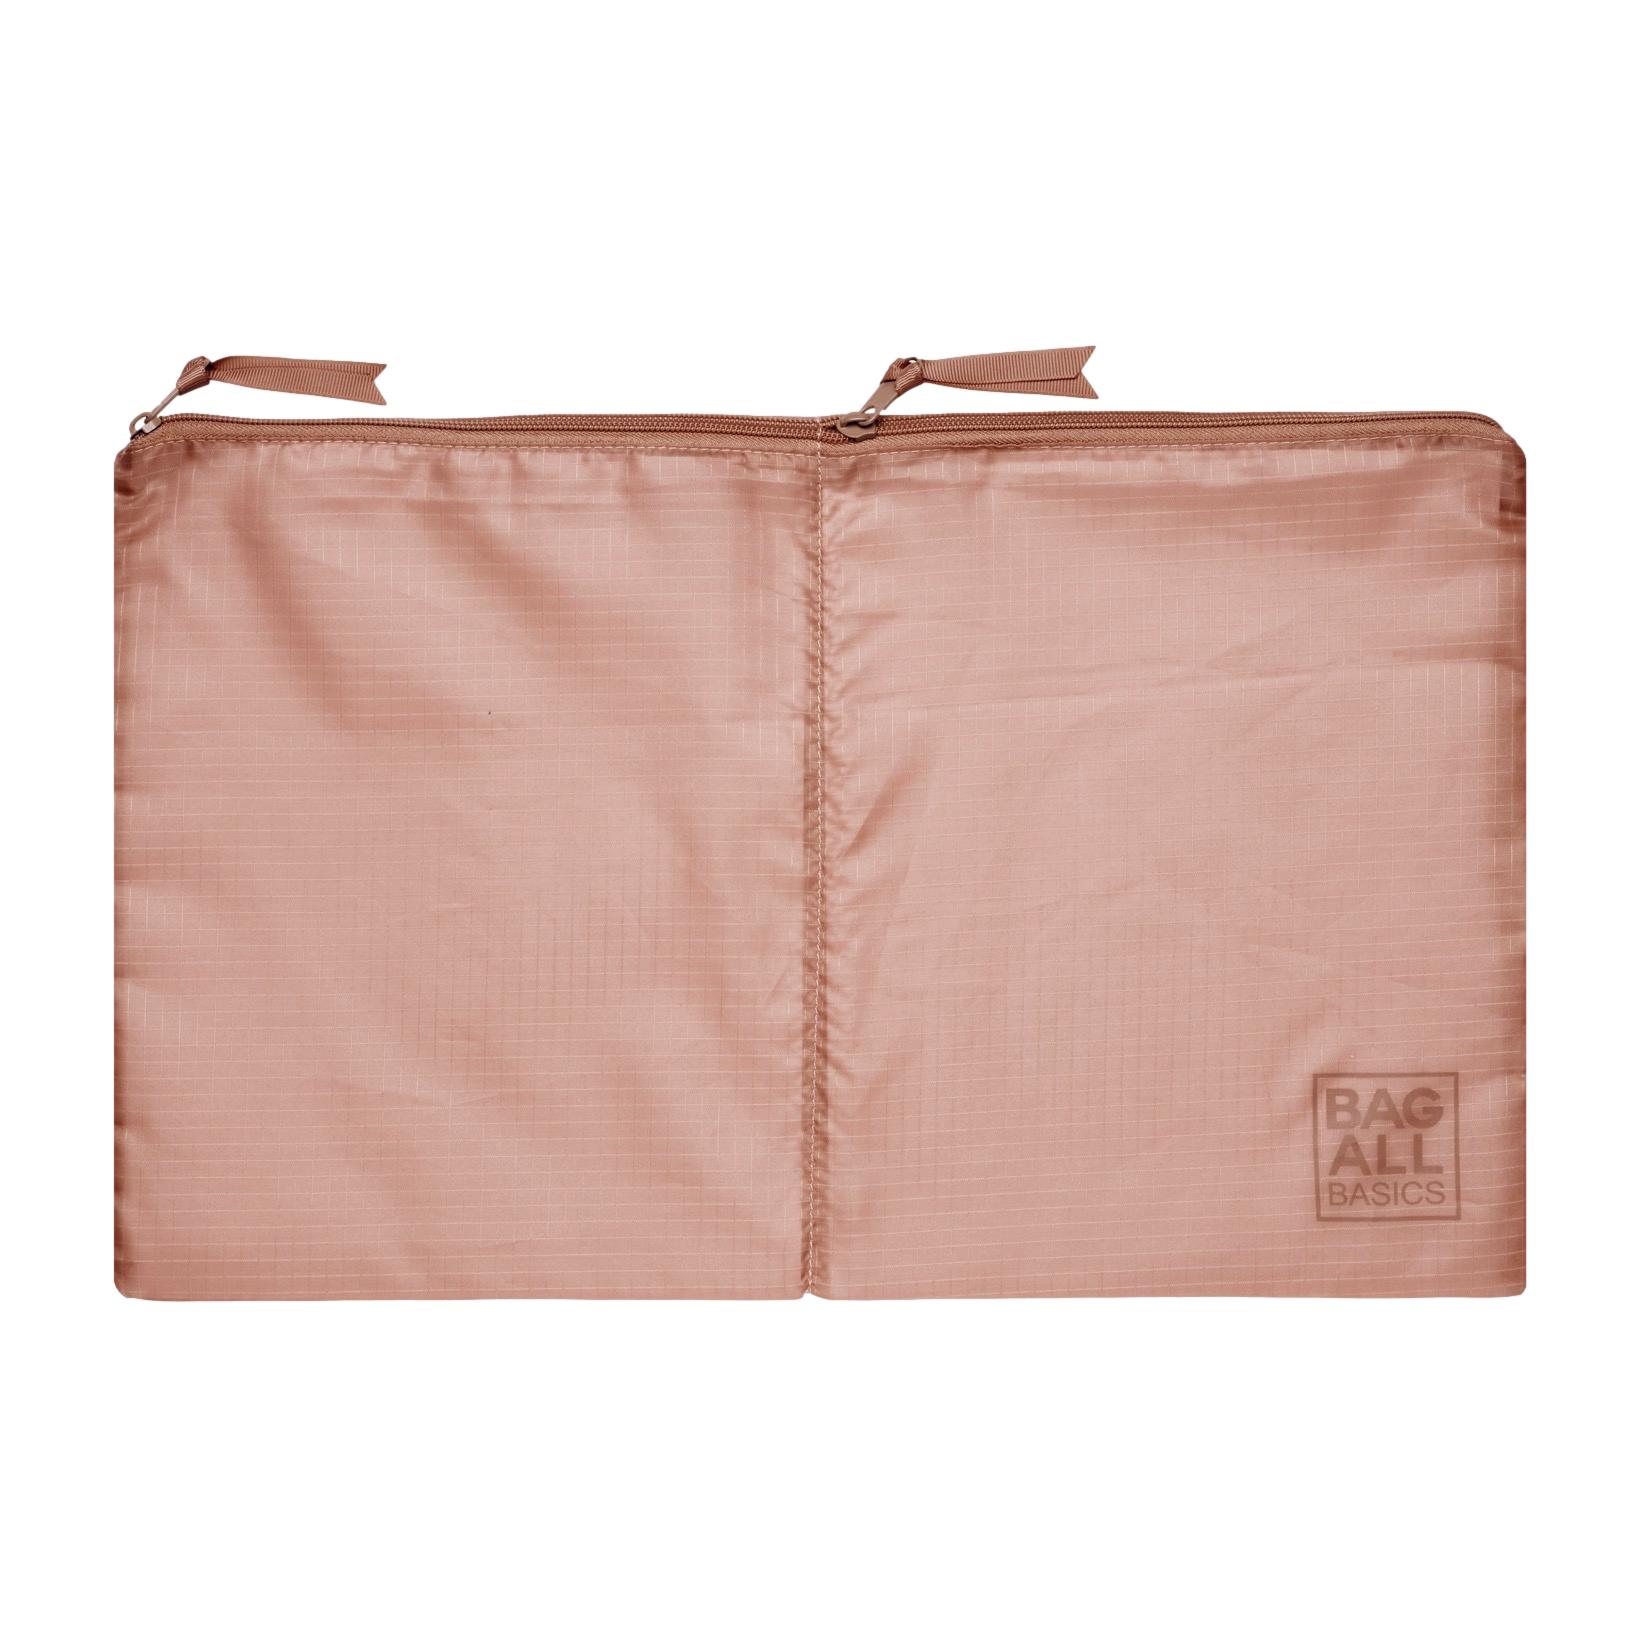 Bag-all Basic Sacs d’organisation, Rose Poudré, Pack de 8 | Bag-all